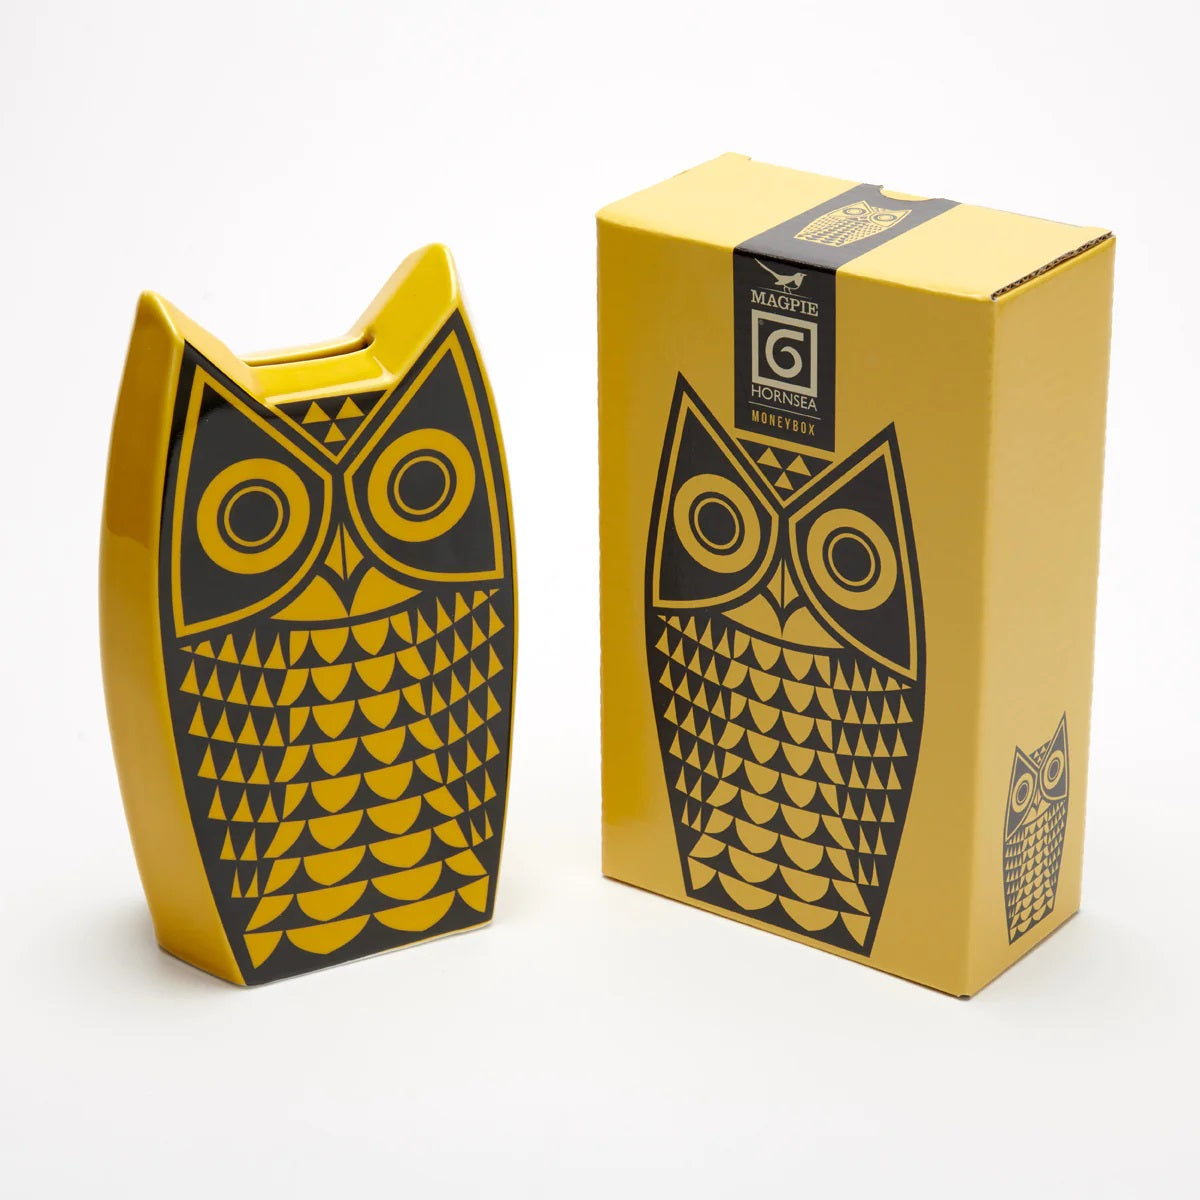 Hornsea Owl Moneybox Yellow With Box